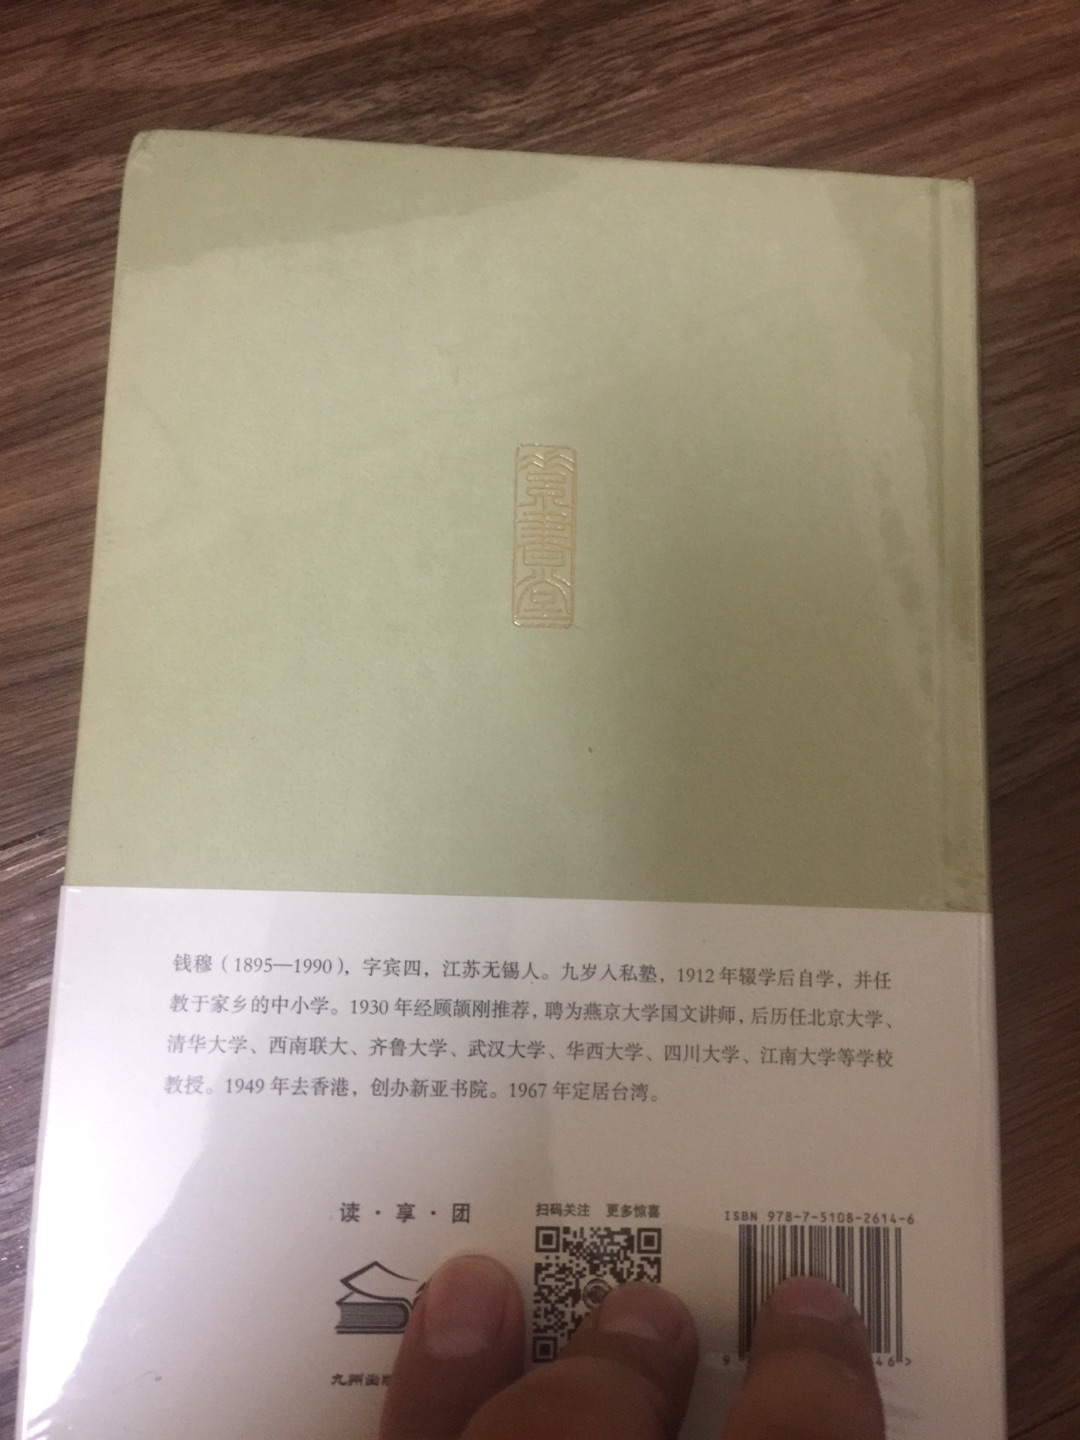 钱穆先生的《读史随劄》，虽然九州出版社有钱穆先生的一套全集，无奈是平装版，不利于收藏放弃。这套是简体的精装版，收藏阅读俱佳。